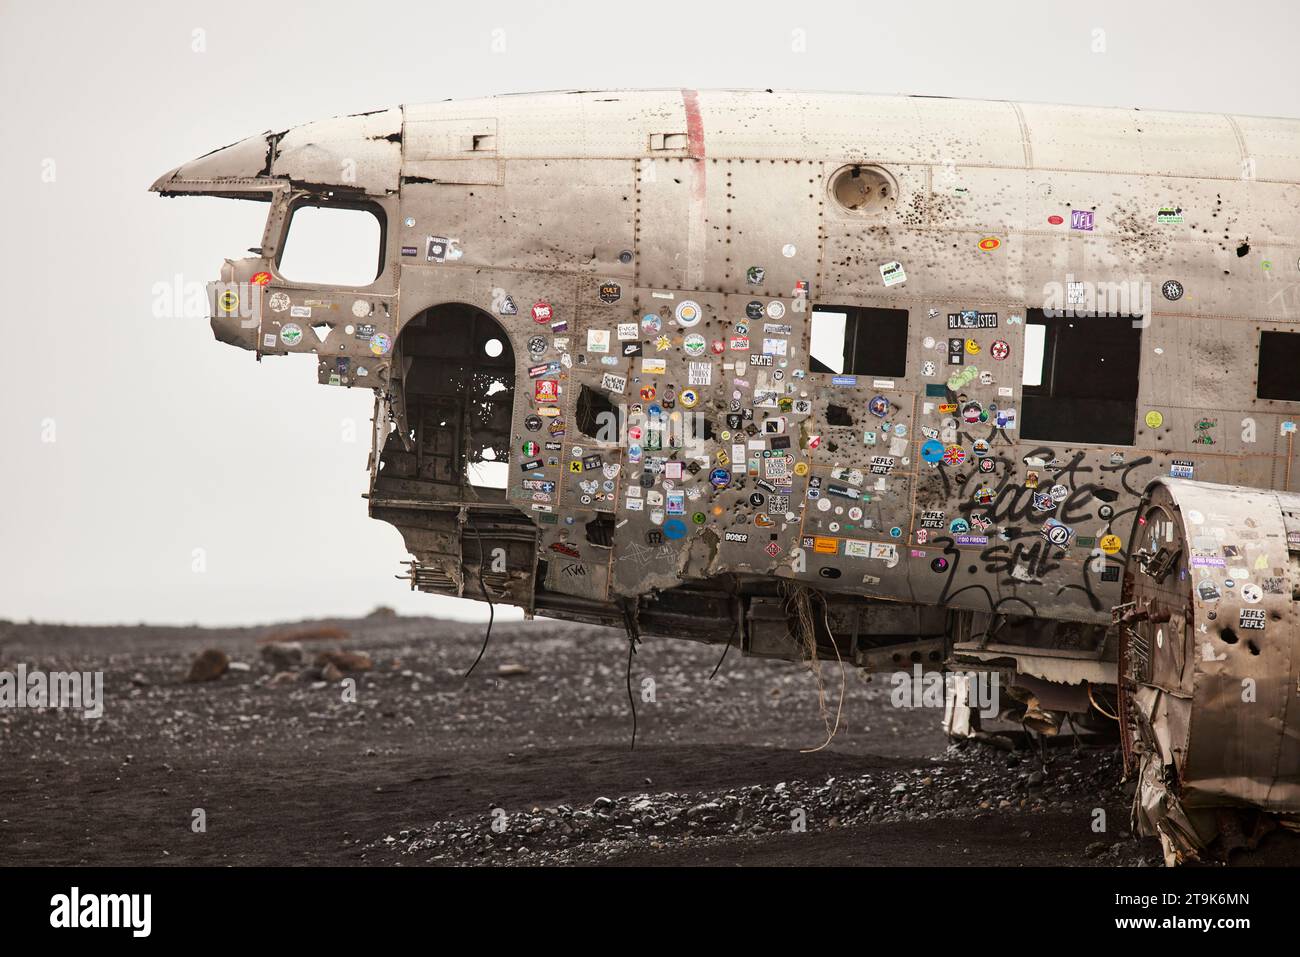 Islande Solheimasandur plane Wreck s'est écrasé DC-3 plane sur la plage Banque D'Images